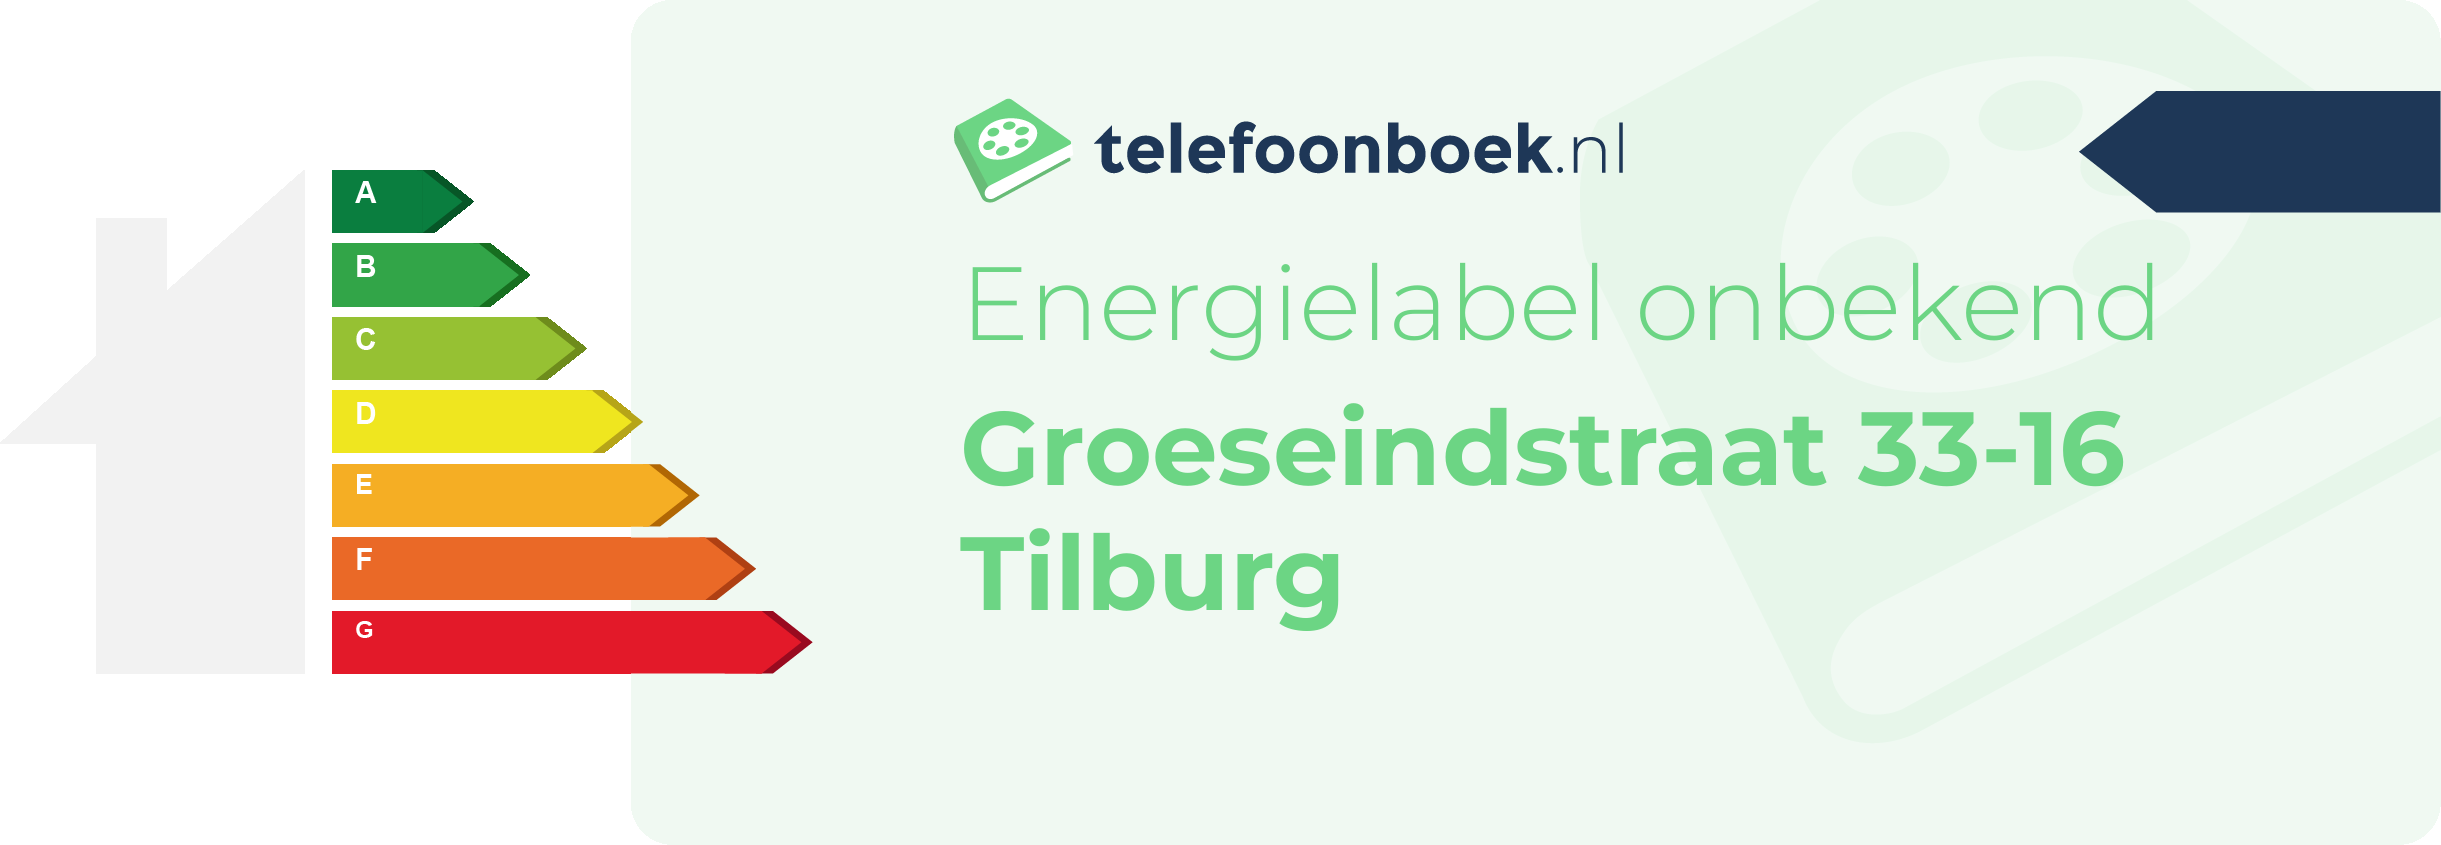 Energielabel Groeseindstraat 33-16 Tilburg